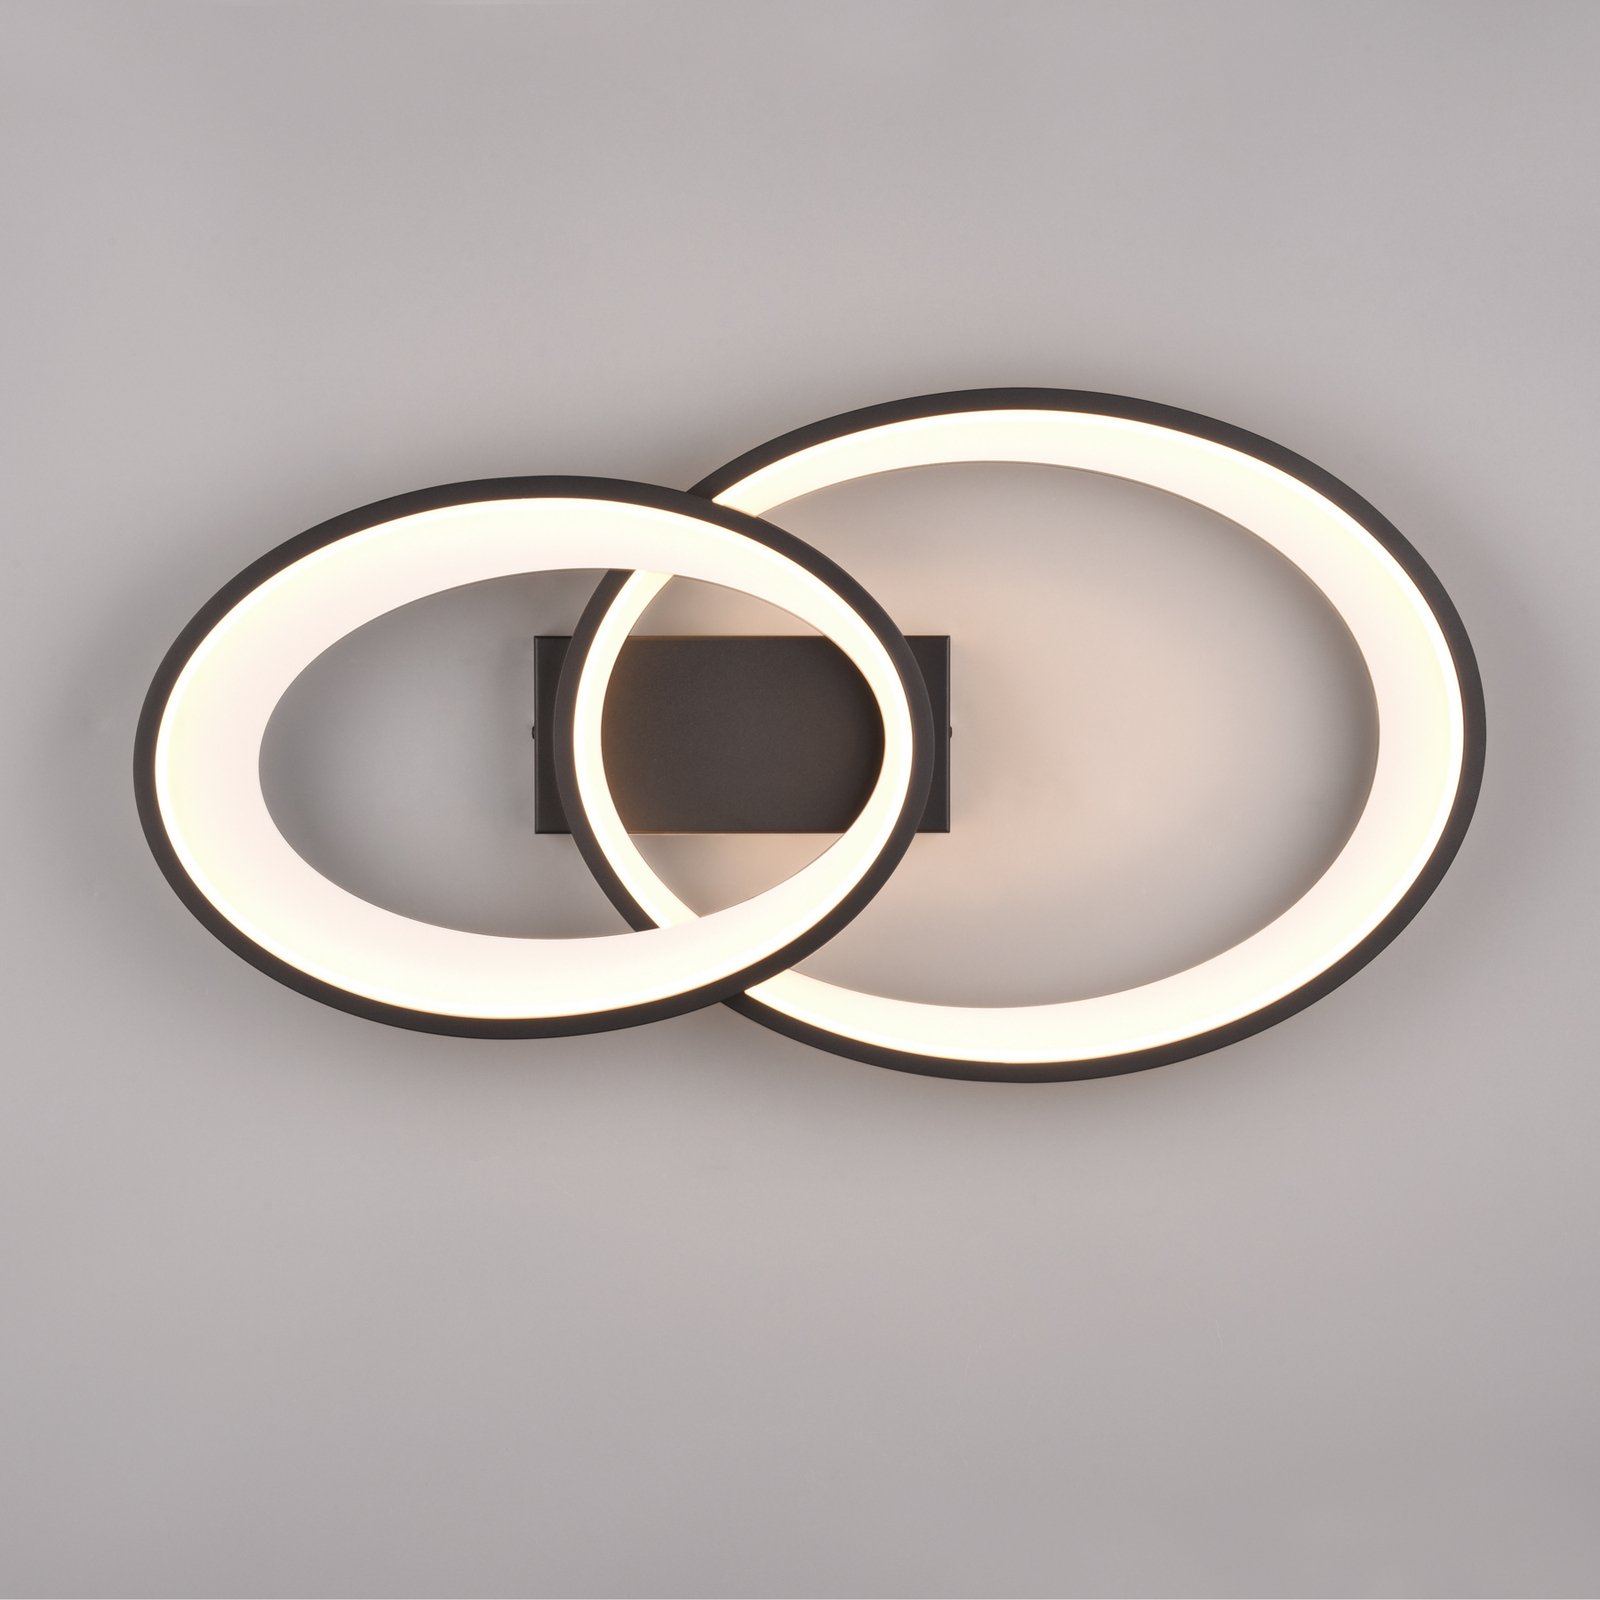 LED-taklampa Malaga med 2 ringar, svart